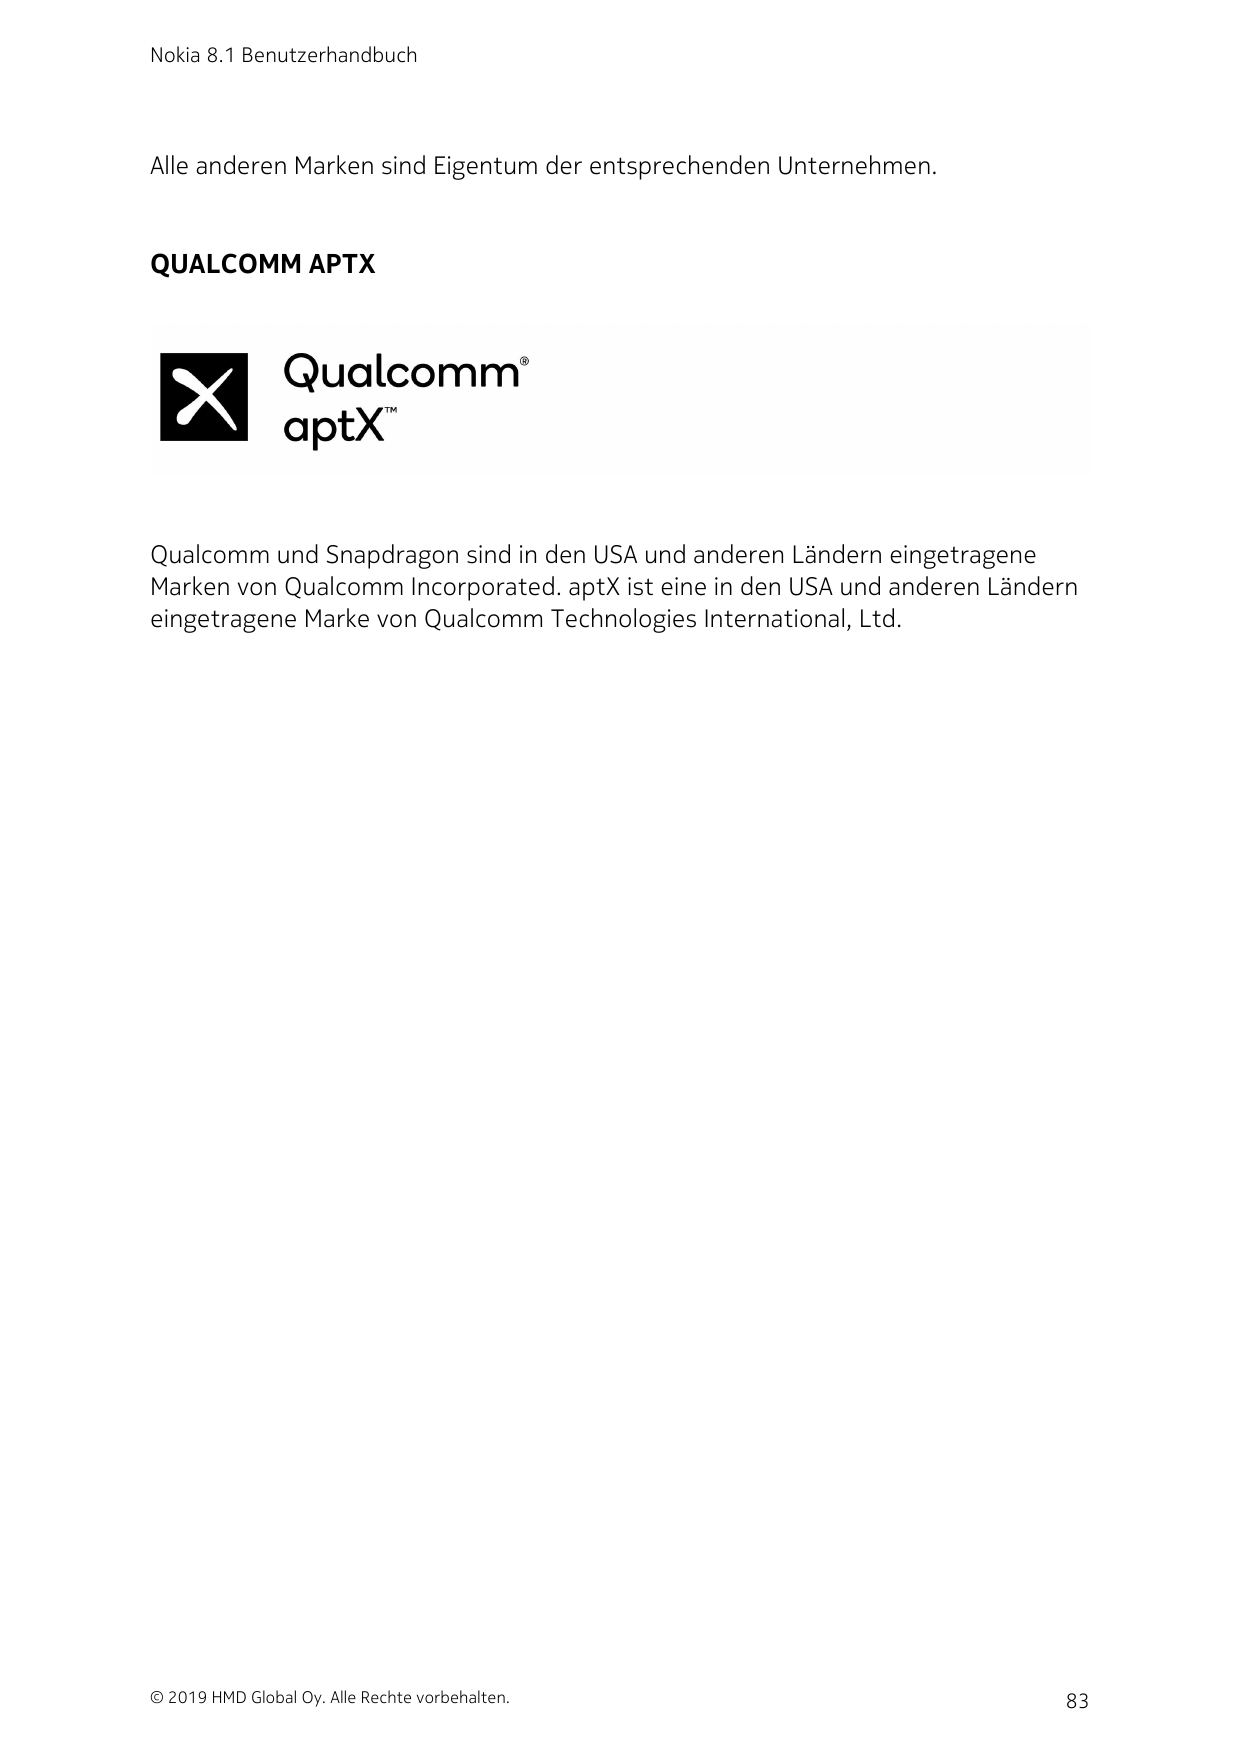 Nokia 8.1 BenutzerhandbuchAlle anderen Marken sind Eigentum der entsprechenden Unternehmen.QUALCOMM APTXQualcomm und Snapdragon 